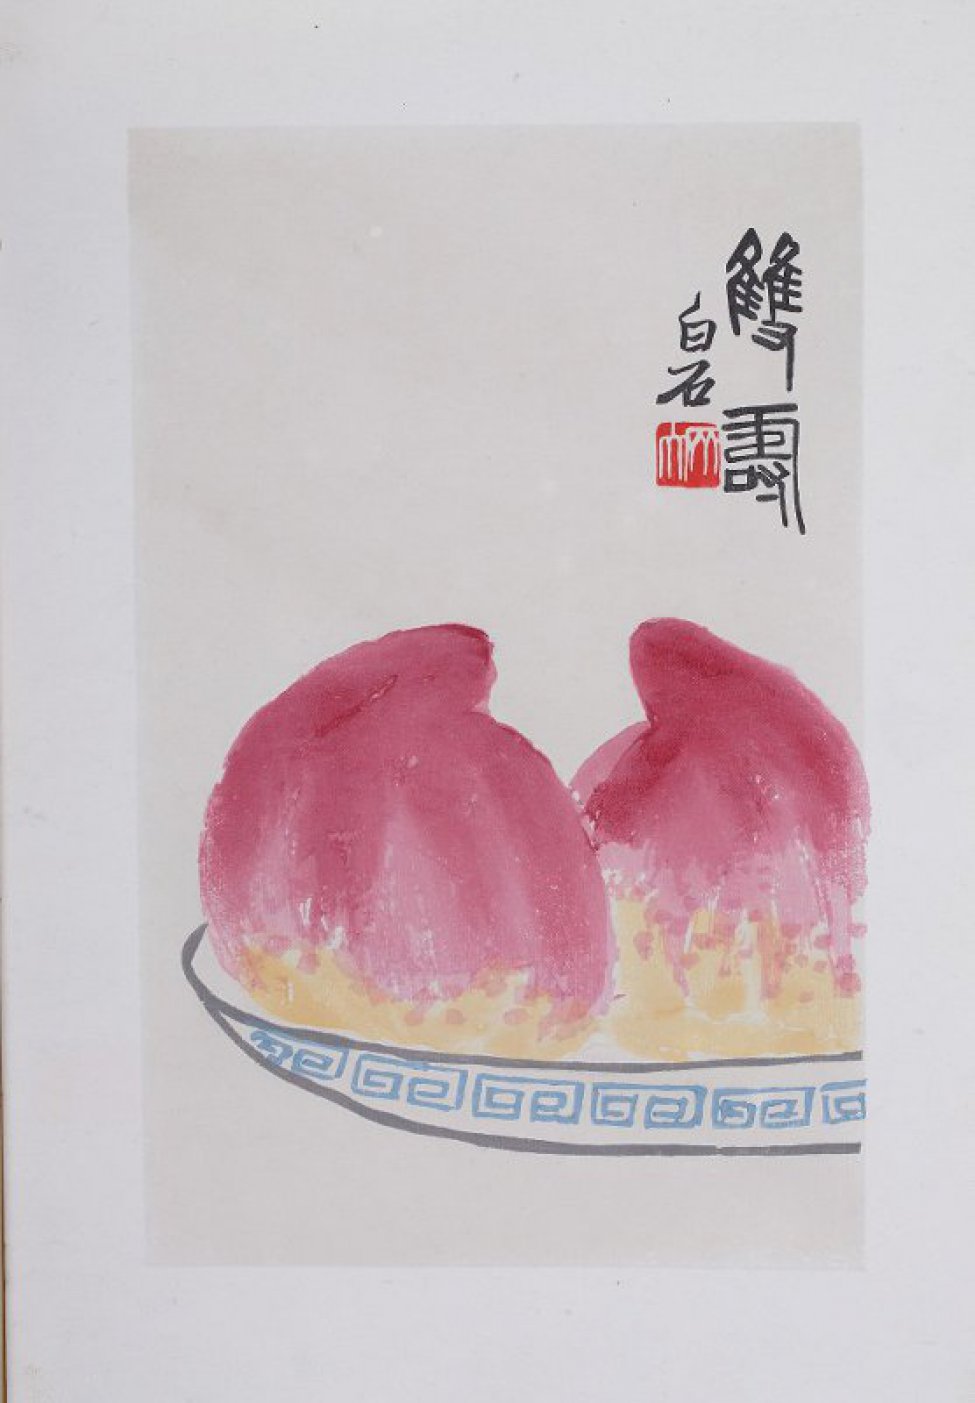 Изображены два крупных  персика, лежащих на тарелке, украшенной геометрическим  орнаментом. Справа вверху 5 иероглифов.